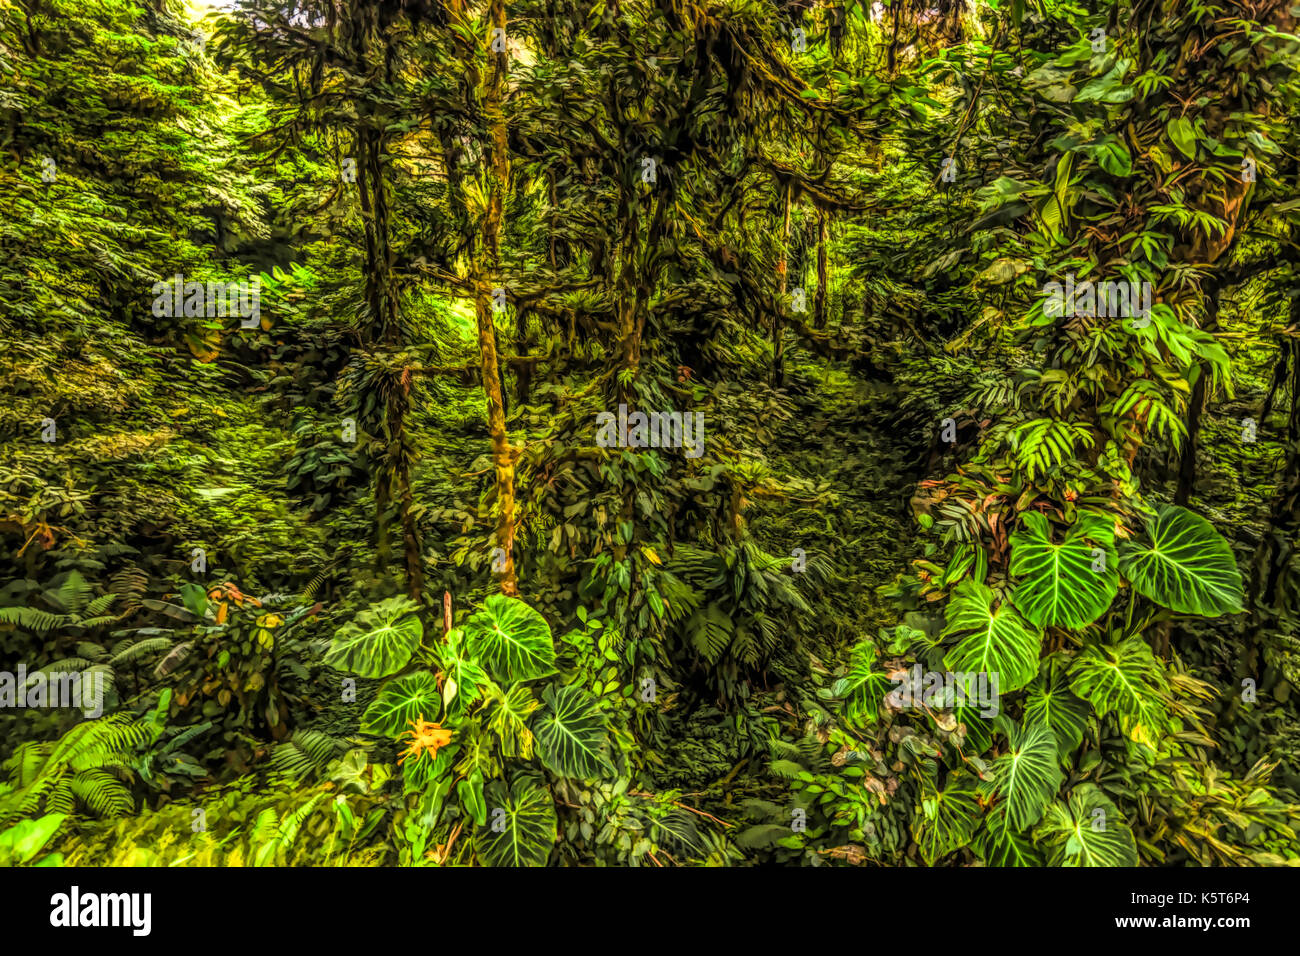 Panamas rain forest landscape scene est la peinture à l'huile illustration style Banque D'Images